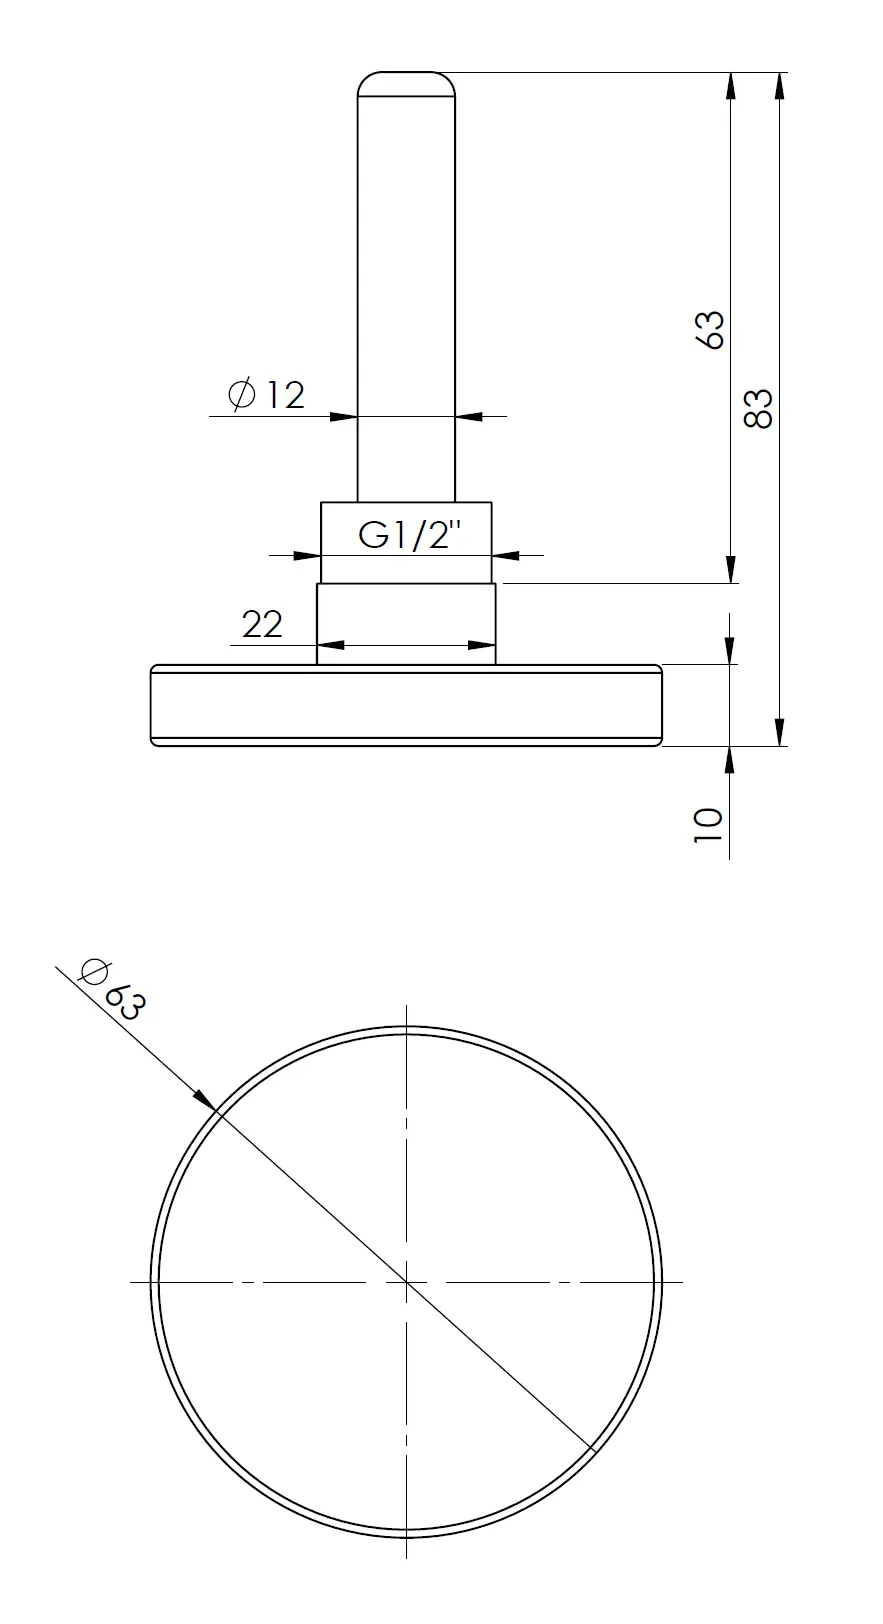 Termometr bimetaliczny BiTh 63, fi63 mm, 0÷120°C, L 63 mm, G1/2", ax, kl. 2 - budowa